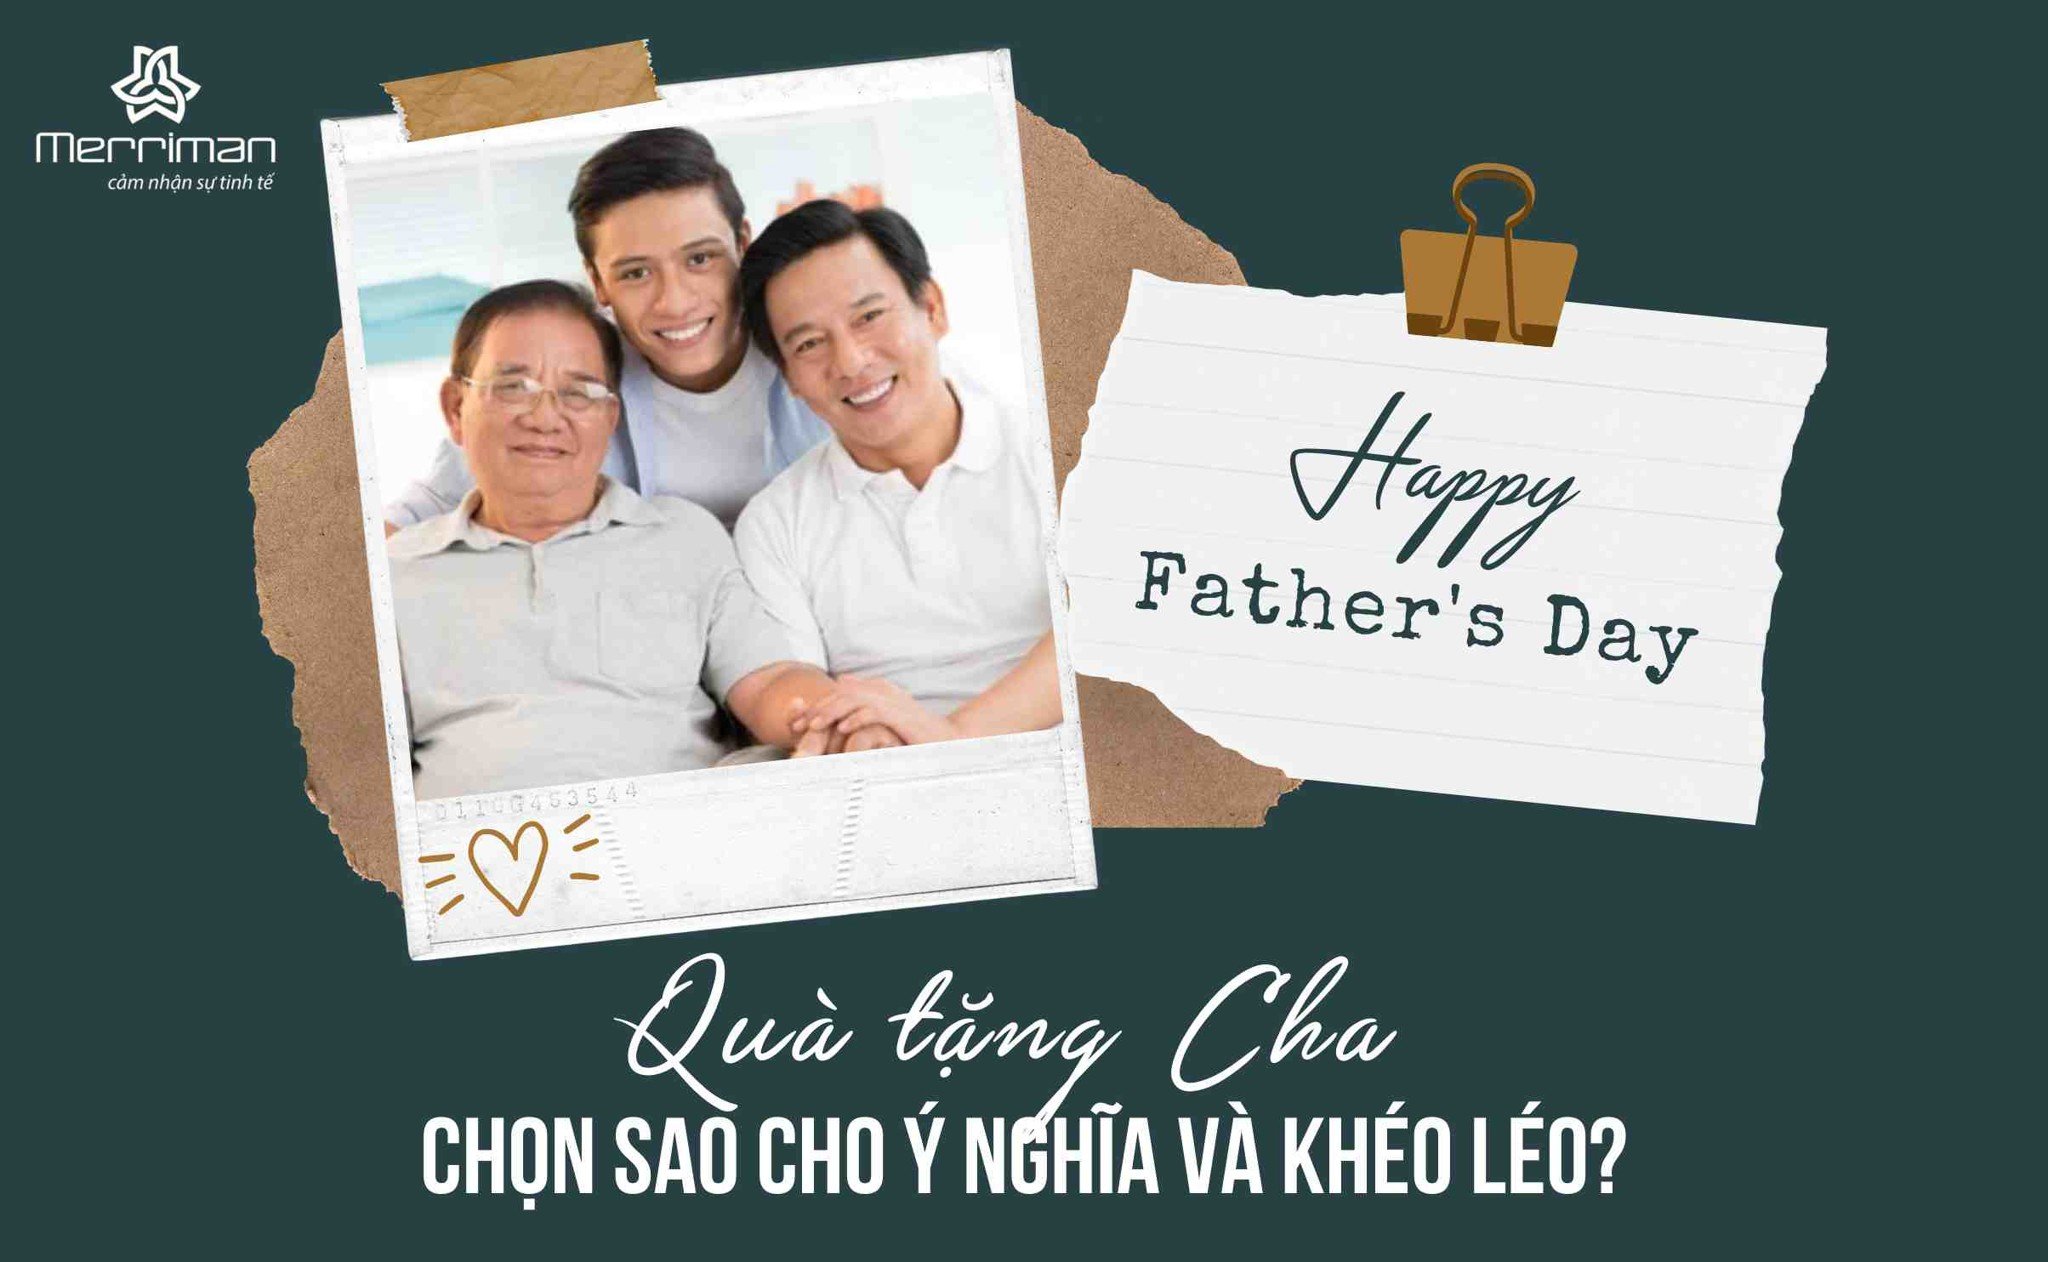 Ngày của Cha: Chọn quà và lời chúc tặng cha sao cho ý nghĩa và khéo léo?